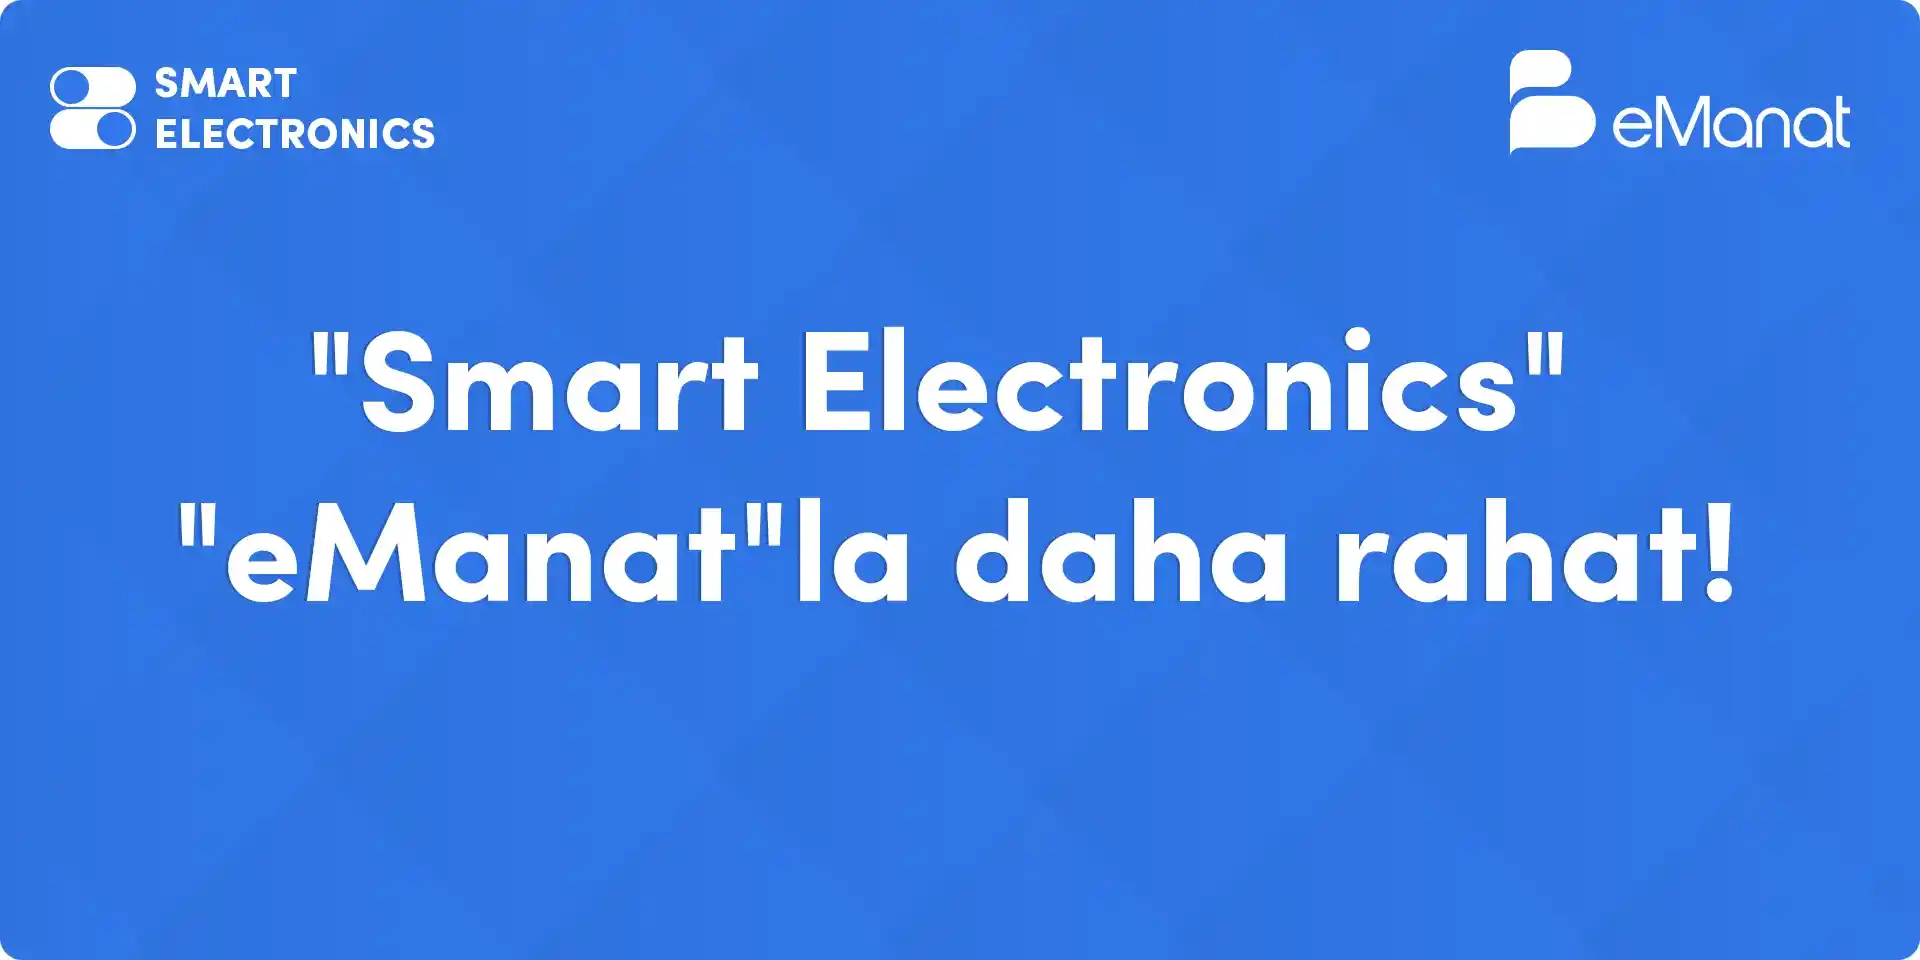 <b>"Smart Electronics" ödənişləri artıq eManatda.</b>